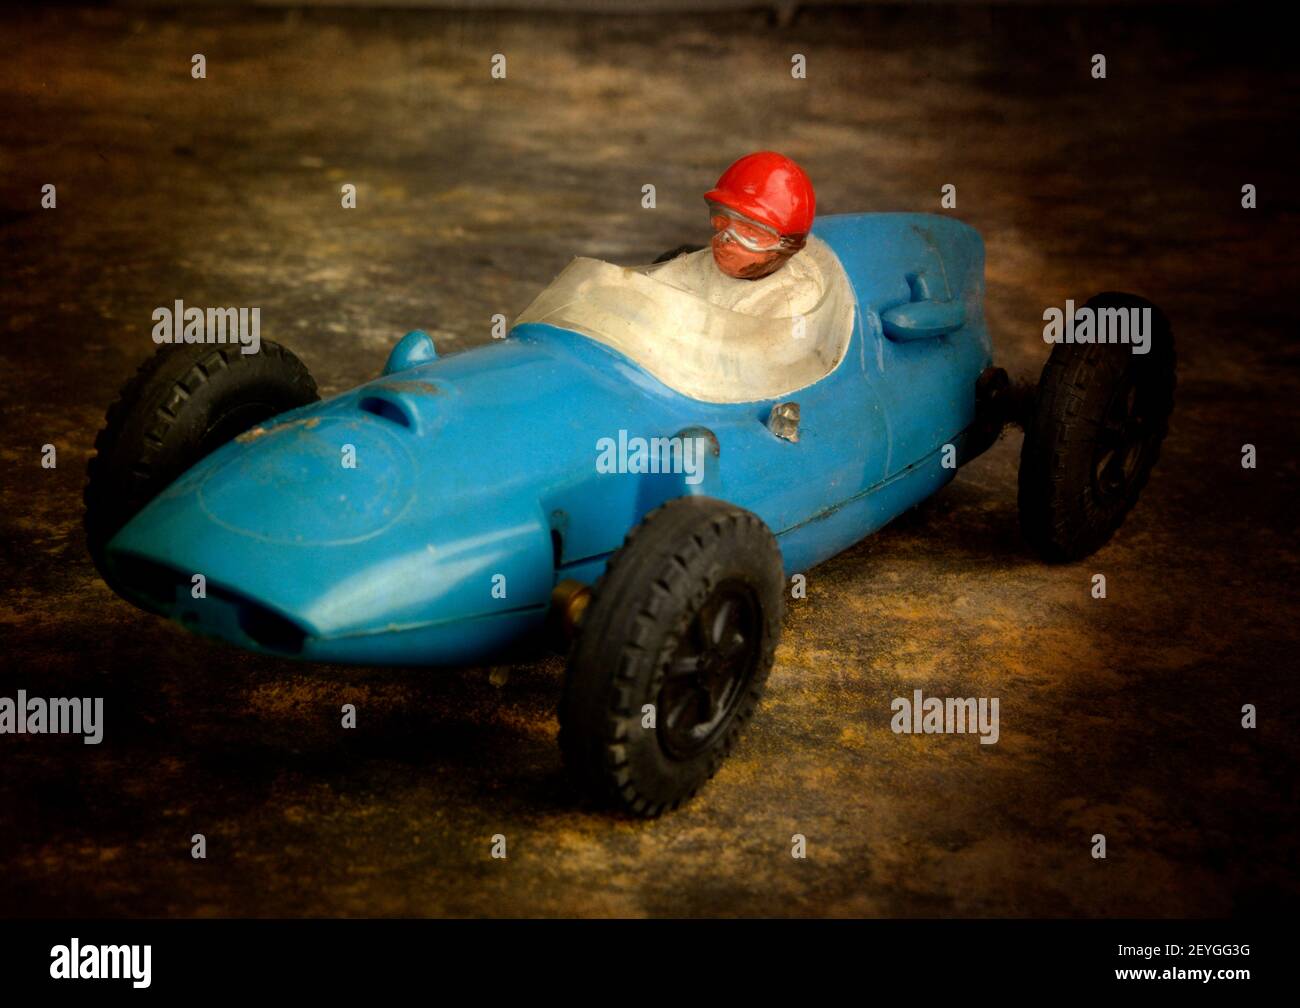 Toy racecar Stock Photo